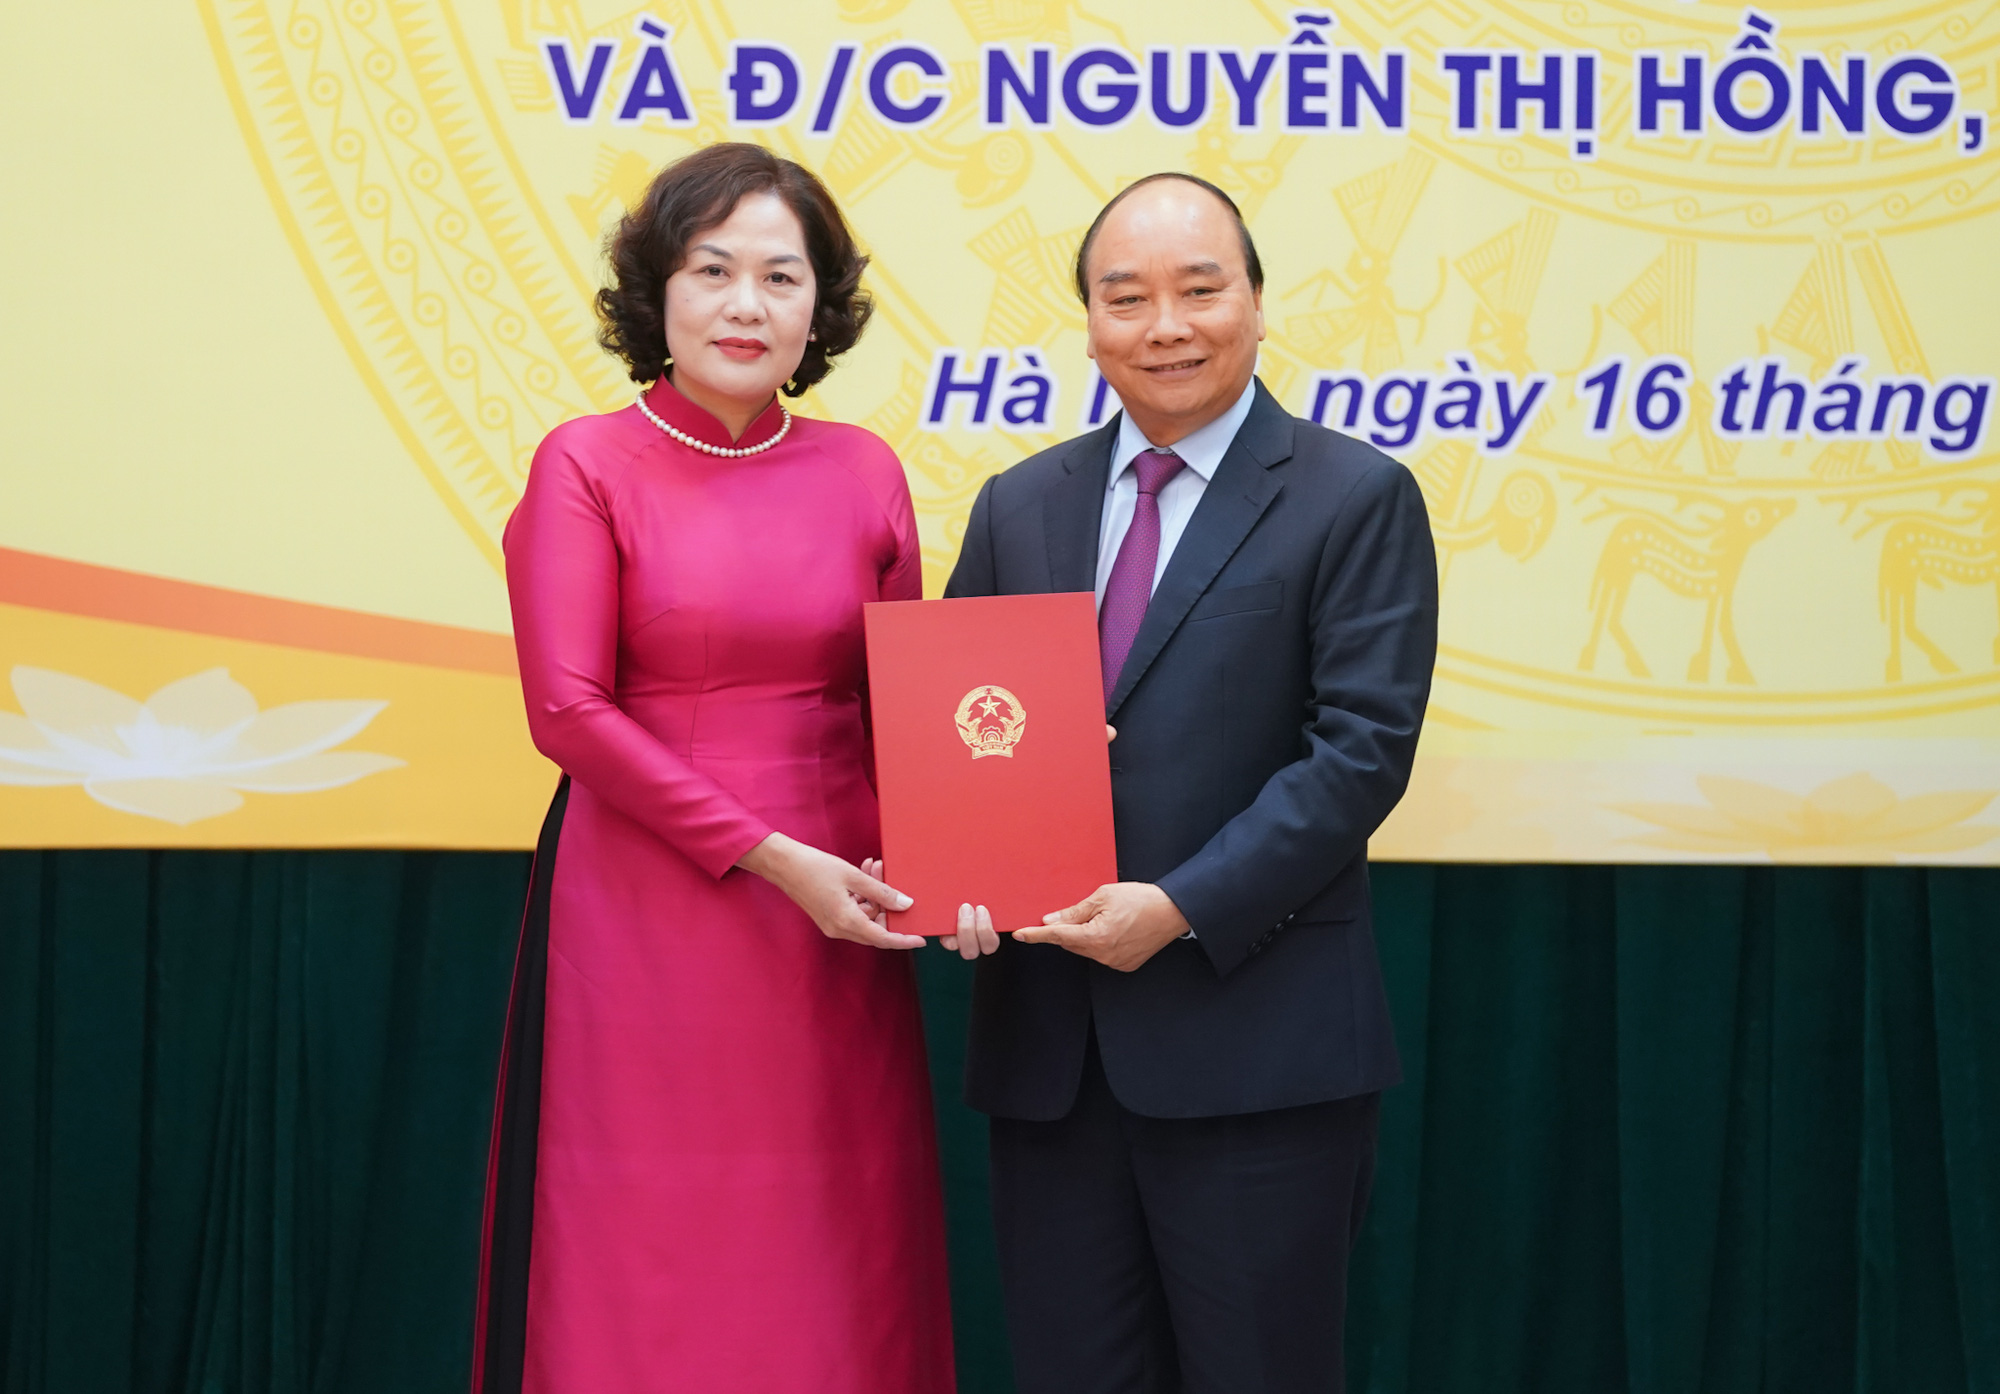 Trao quyết định bổ nhiệm nữ Thống đốc Ngân hàng Nhà nước đầu tiên Nguyễn Thị Hồng - Ảnh 2.